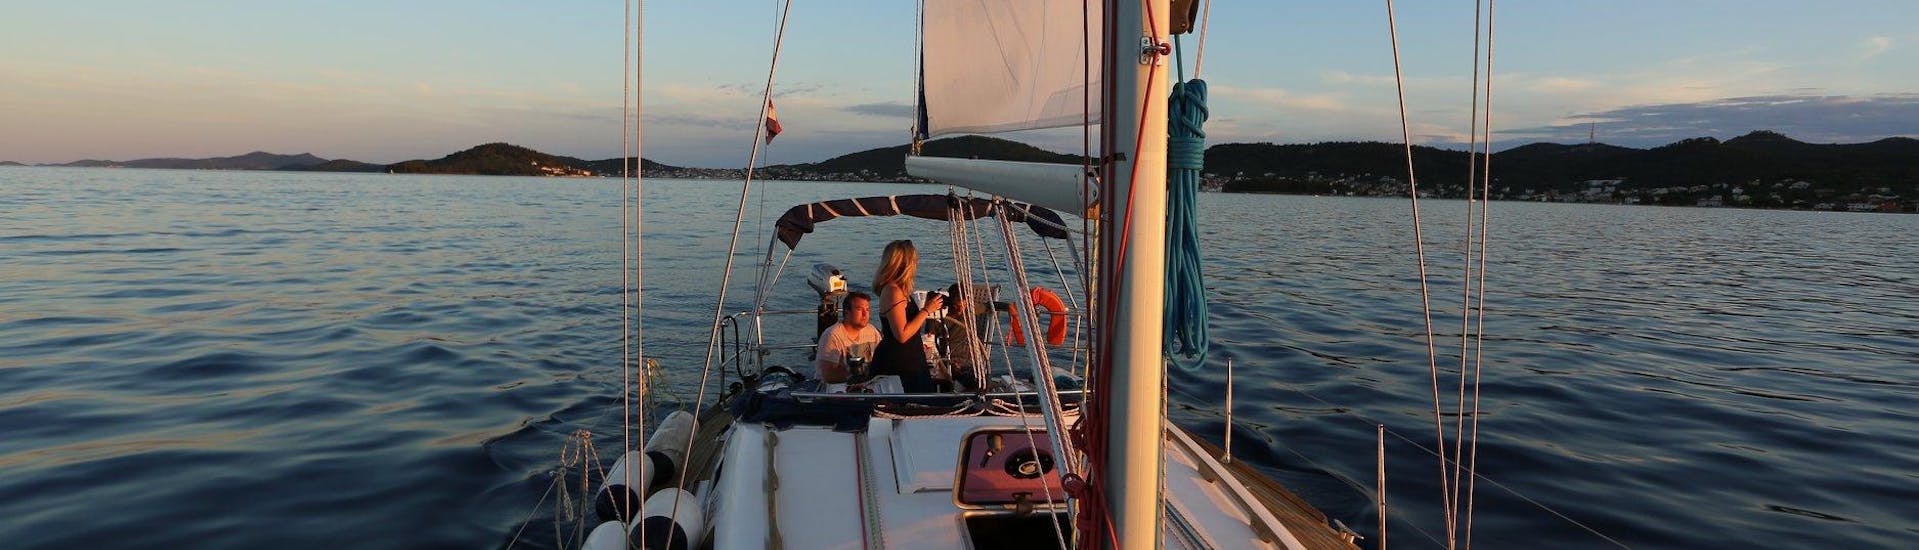 Il sole tramonta durante una gita in barca a vela a Zara con The Day Sail Croatia.